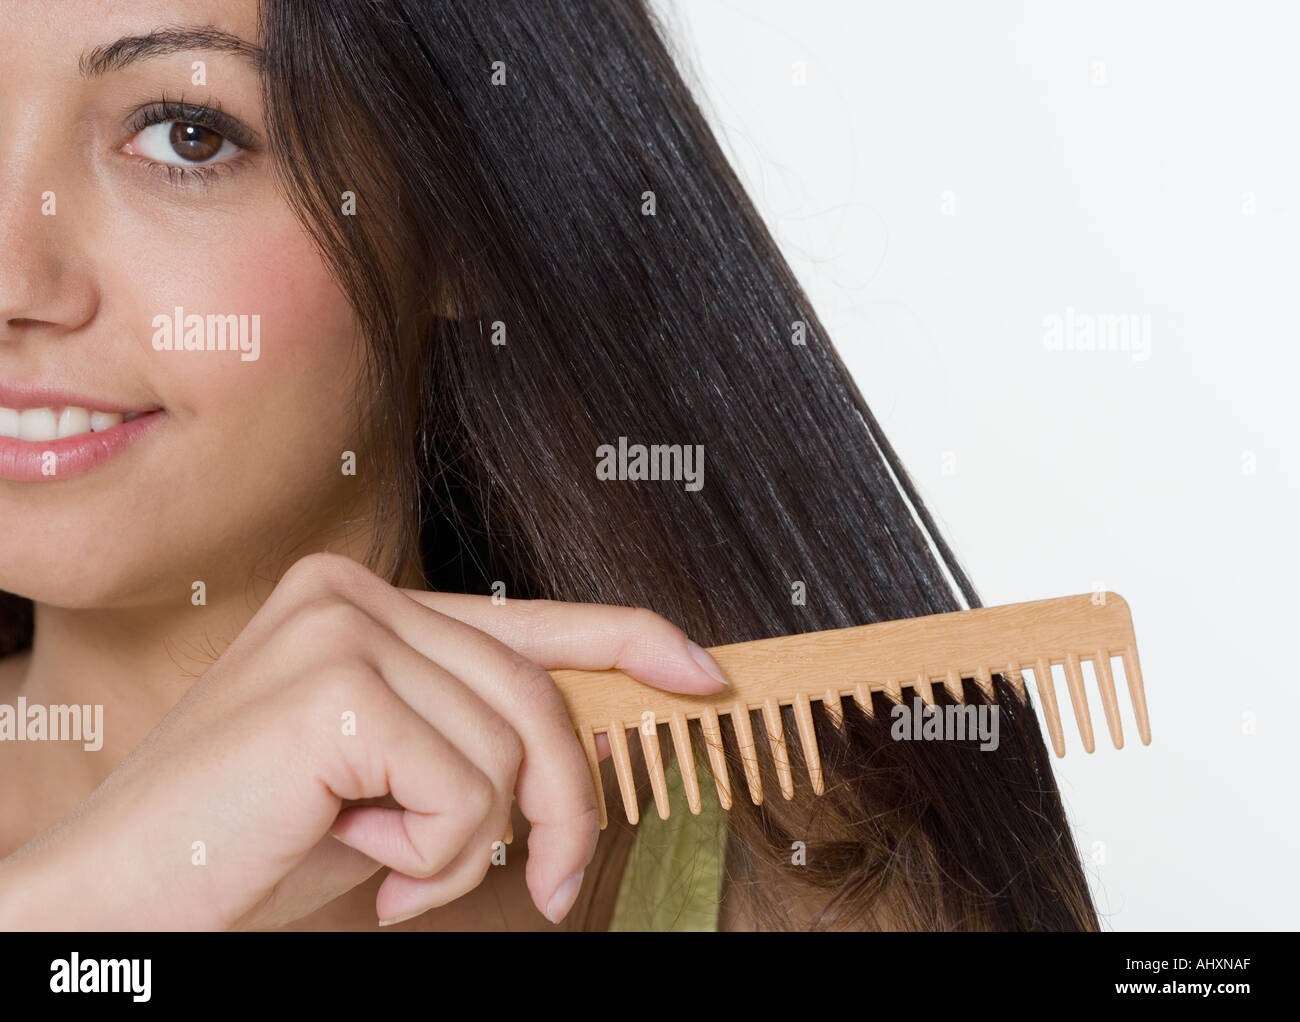 Расчесывать волосы. Расческа для мокрых волос. Девушка расчесывает волосы гребнем. Расчесывать мокрые волосы. Почему нельзя расчесывать волосы